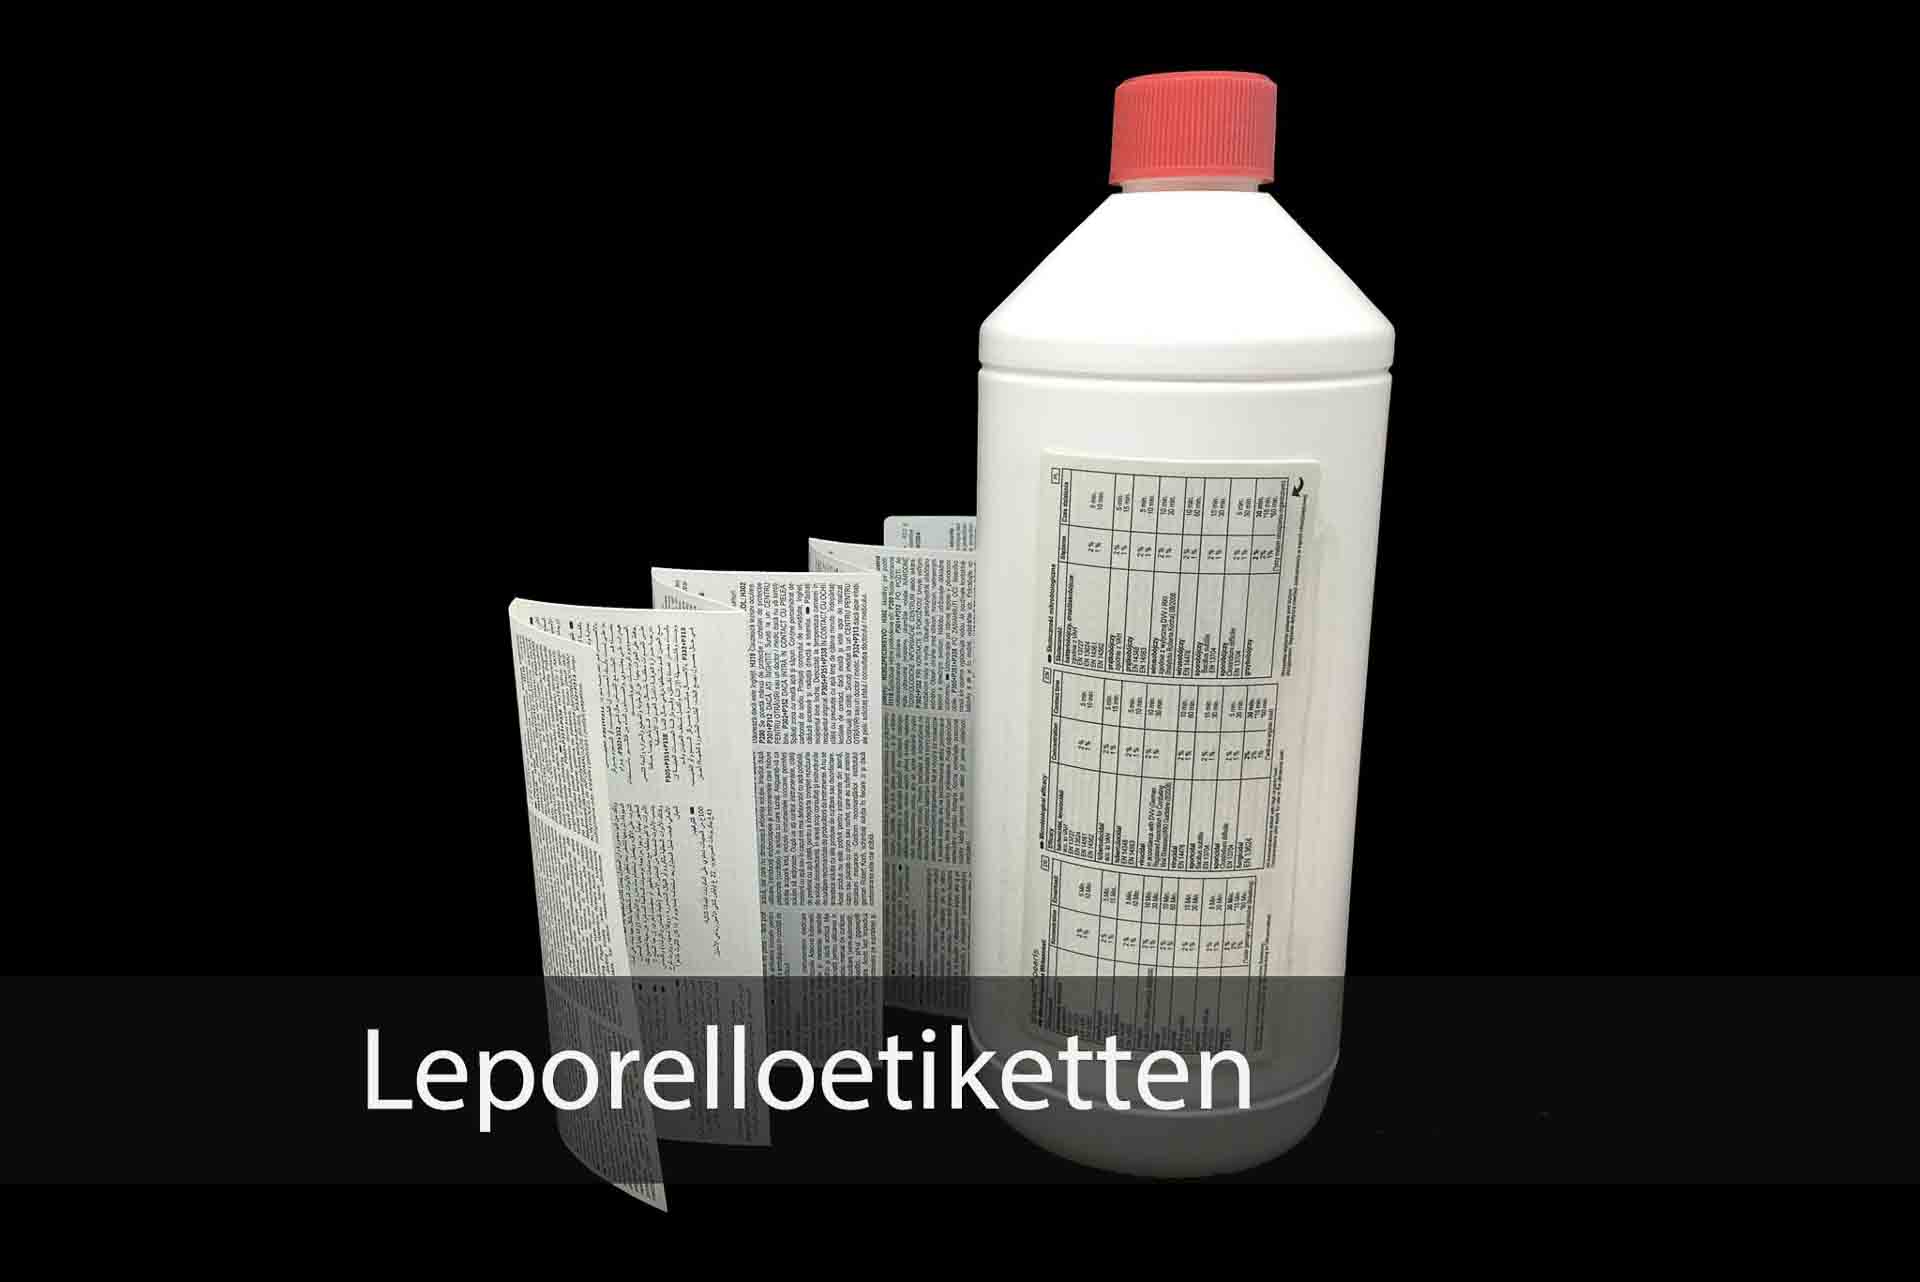 Leporelloetiketten | Papier-Schäfer GmbH & Co. KG